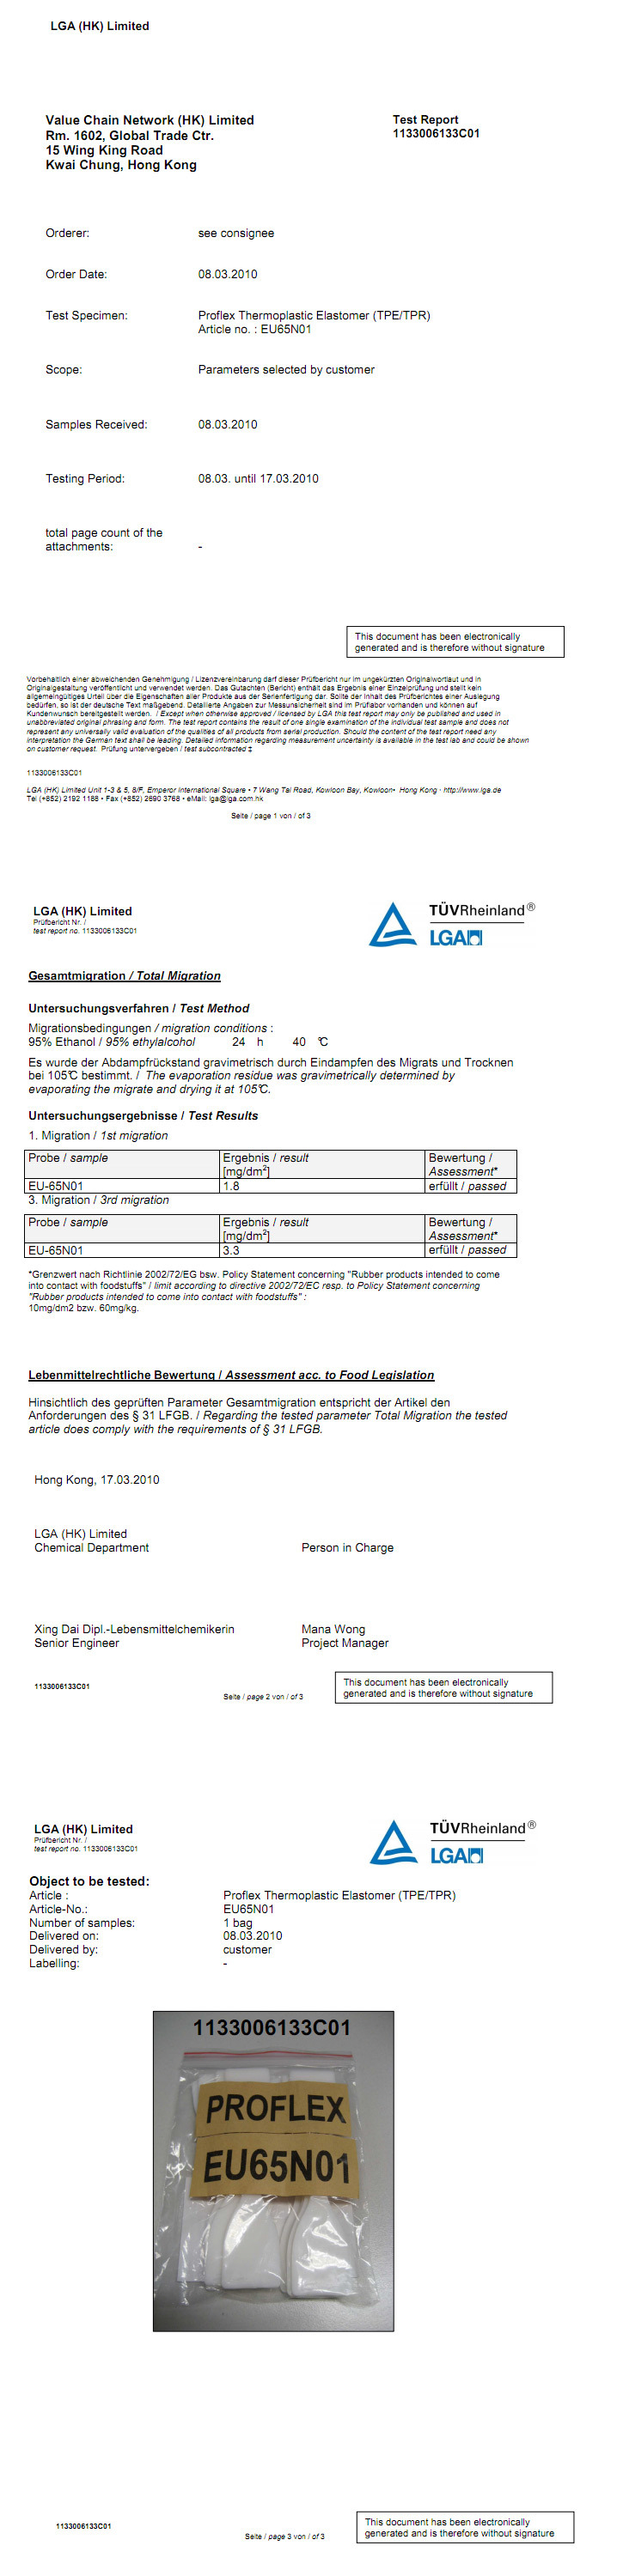 PROFLEX EU-N LFGB 31 95% ETHANOL test report